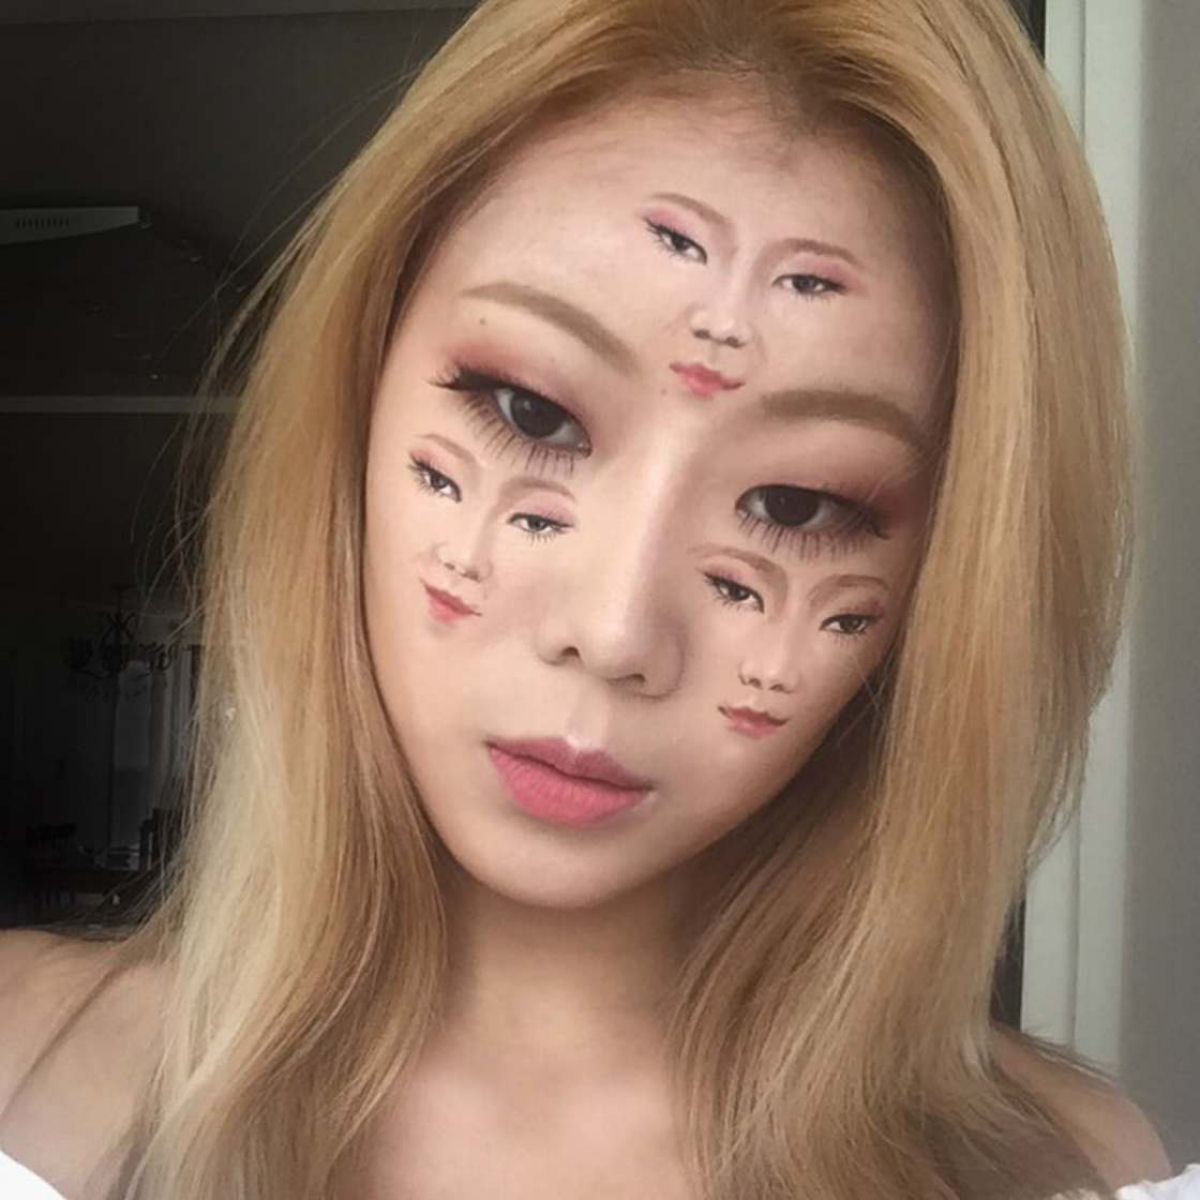 Artista sul-coreana usa maquiagem para transformar sua face em iluses pticas fascinantes 13